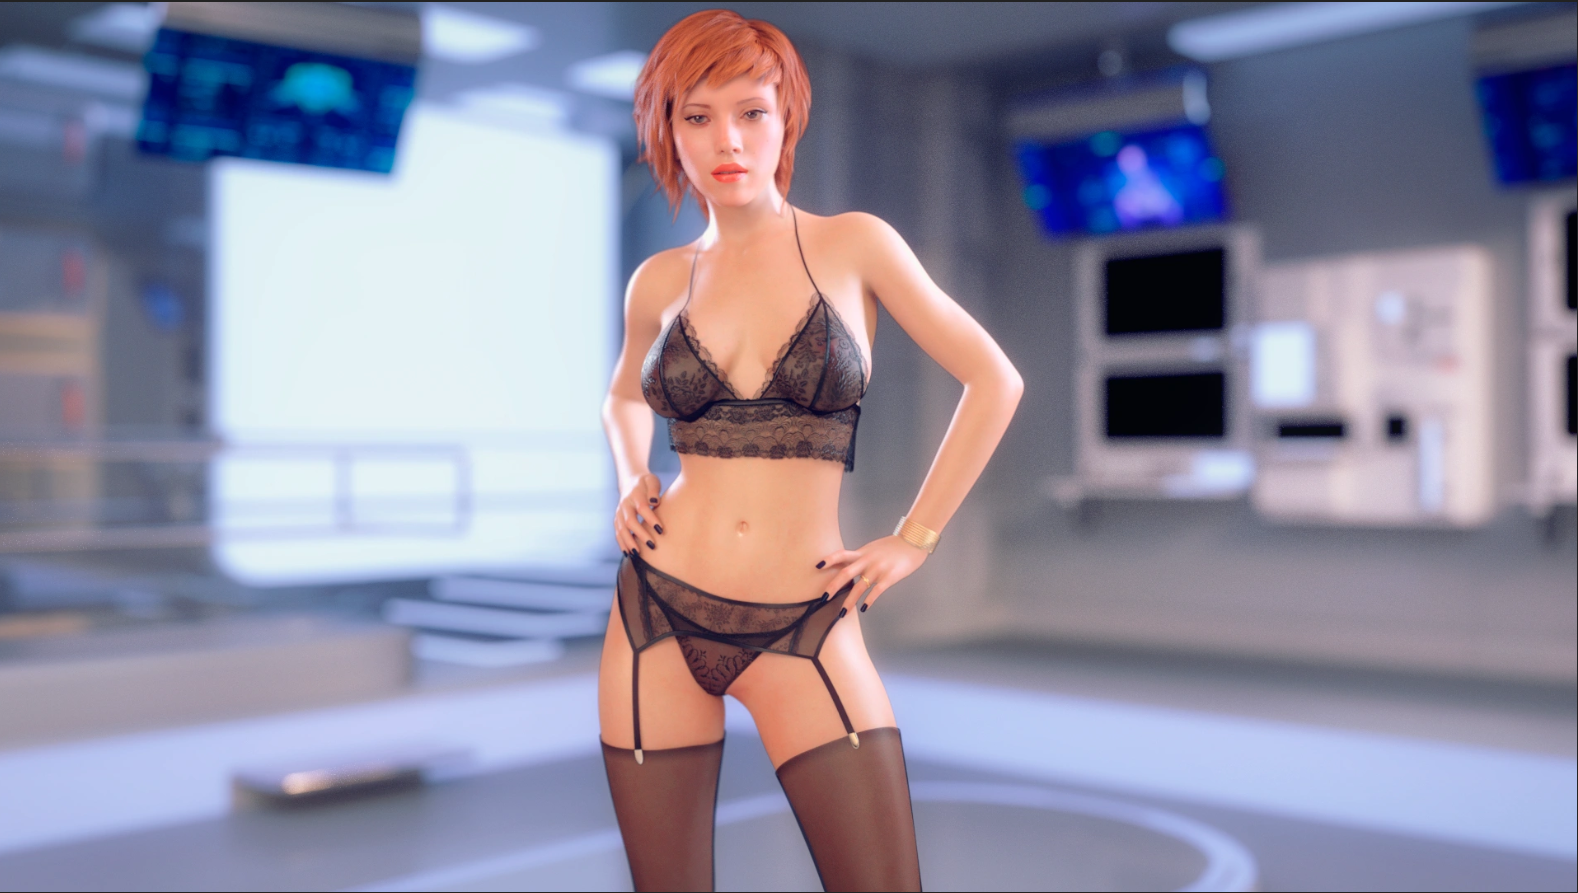 Sexbot game walkthrough - ðŸ§¡ Haydee NSFW Mod Gameplay in 1440 60FPS Final -...